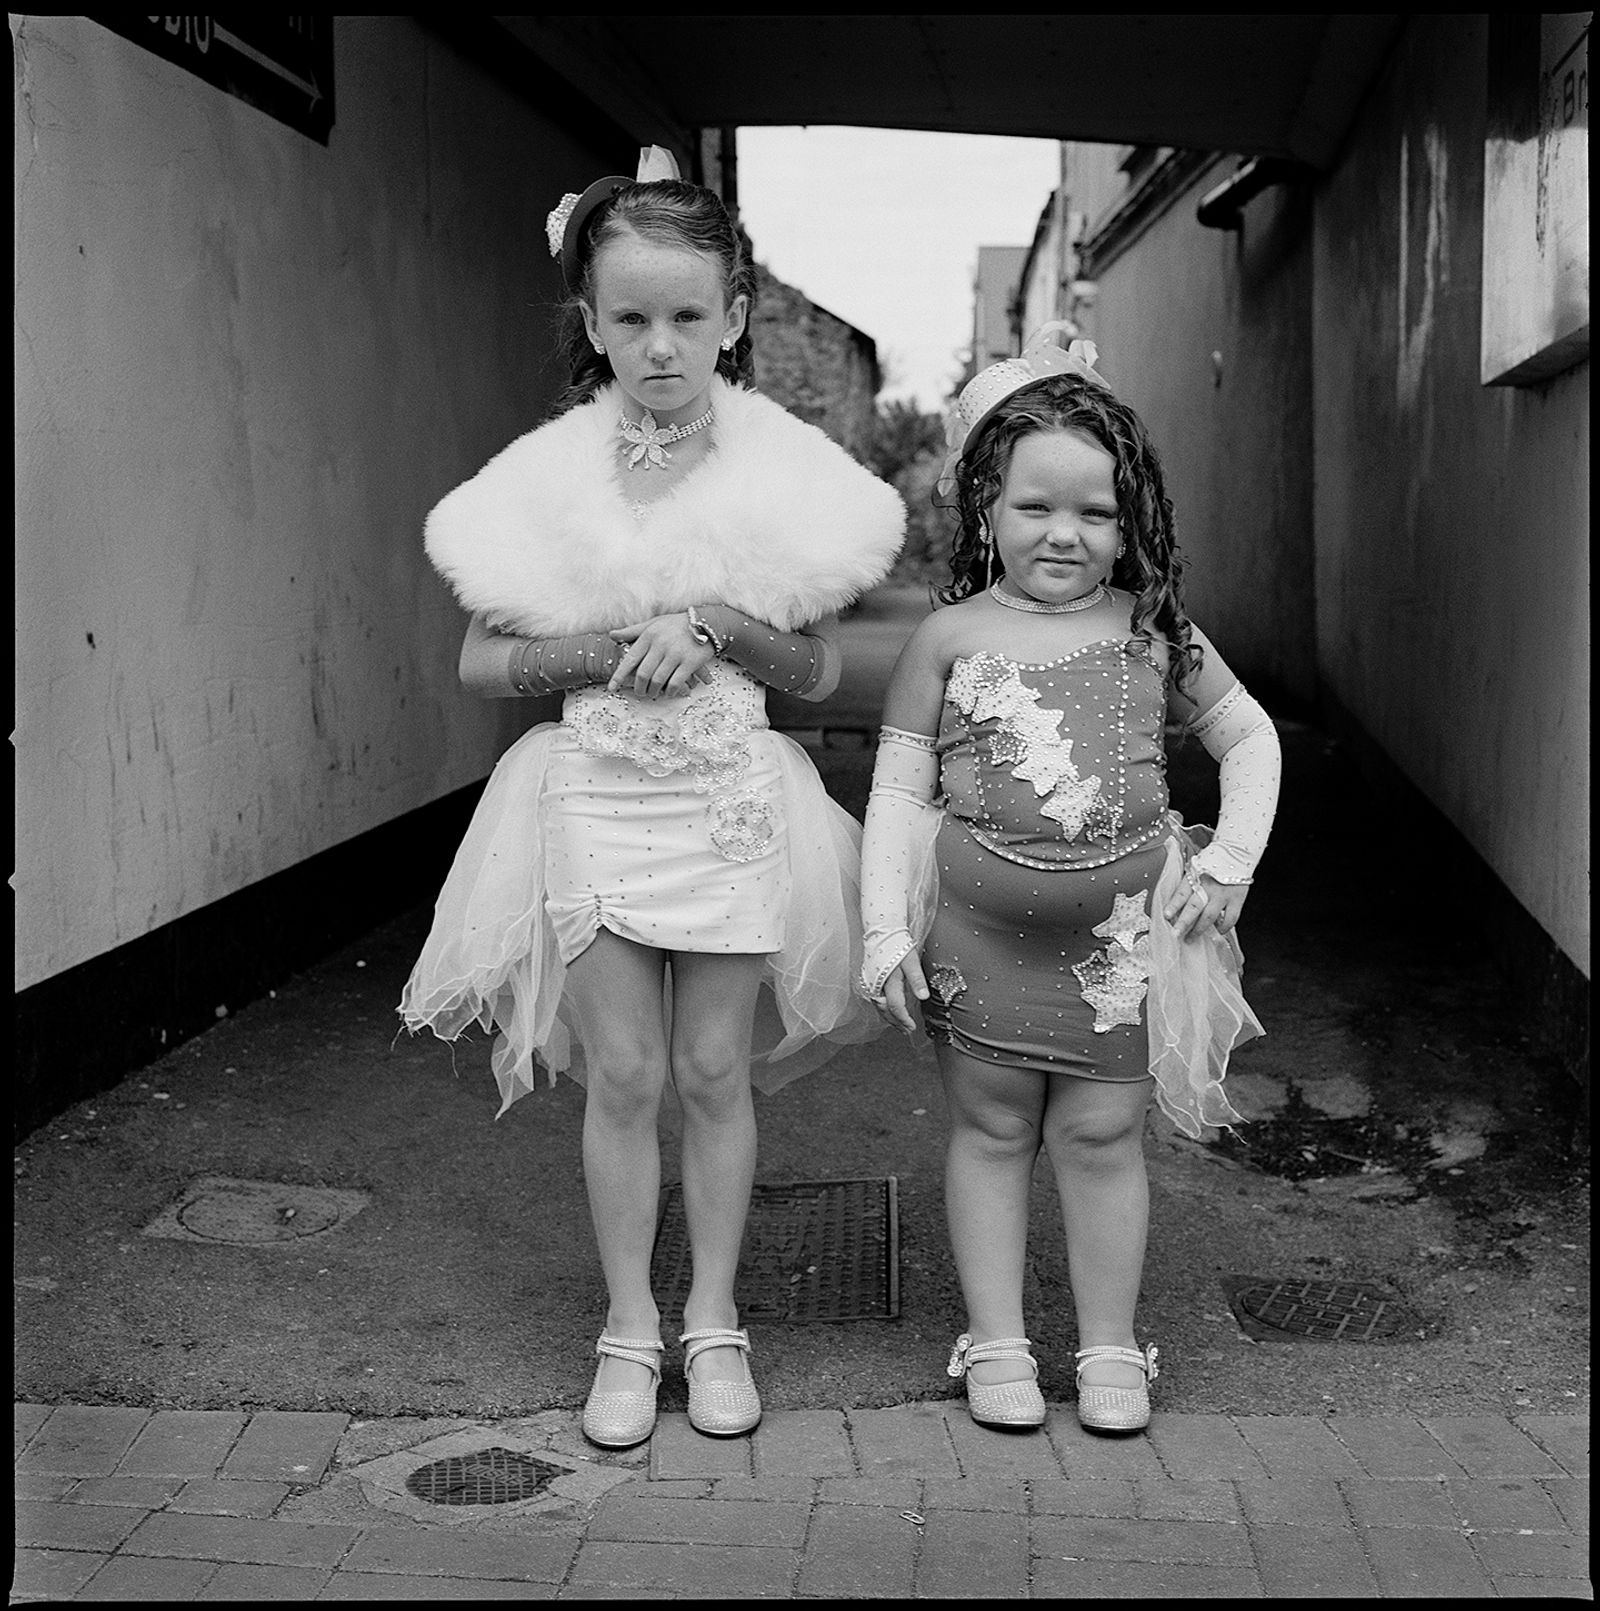 © Joseph-Philippe Bevillard - Girls in Costume, Ballinasloe, Galway, Ireland 2013